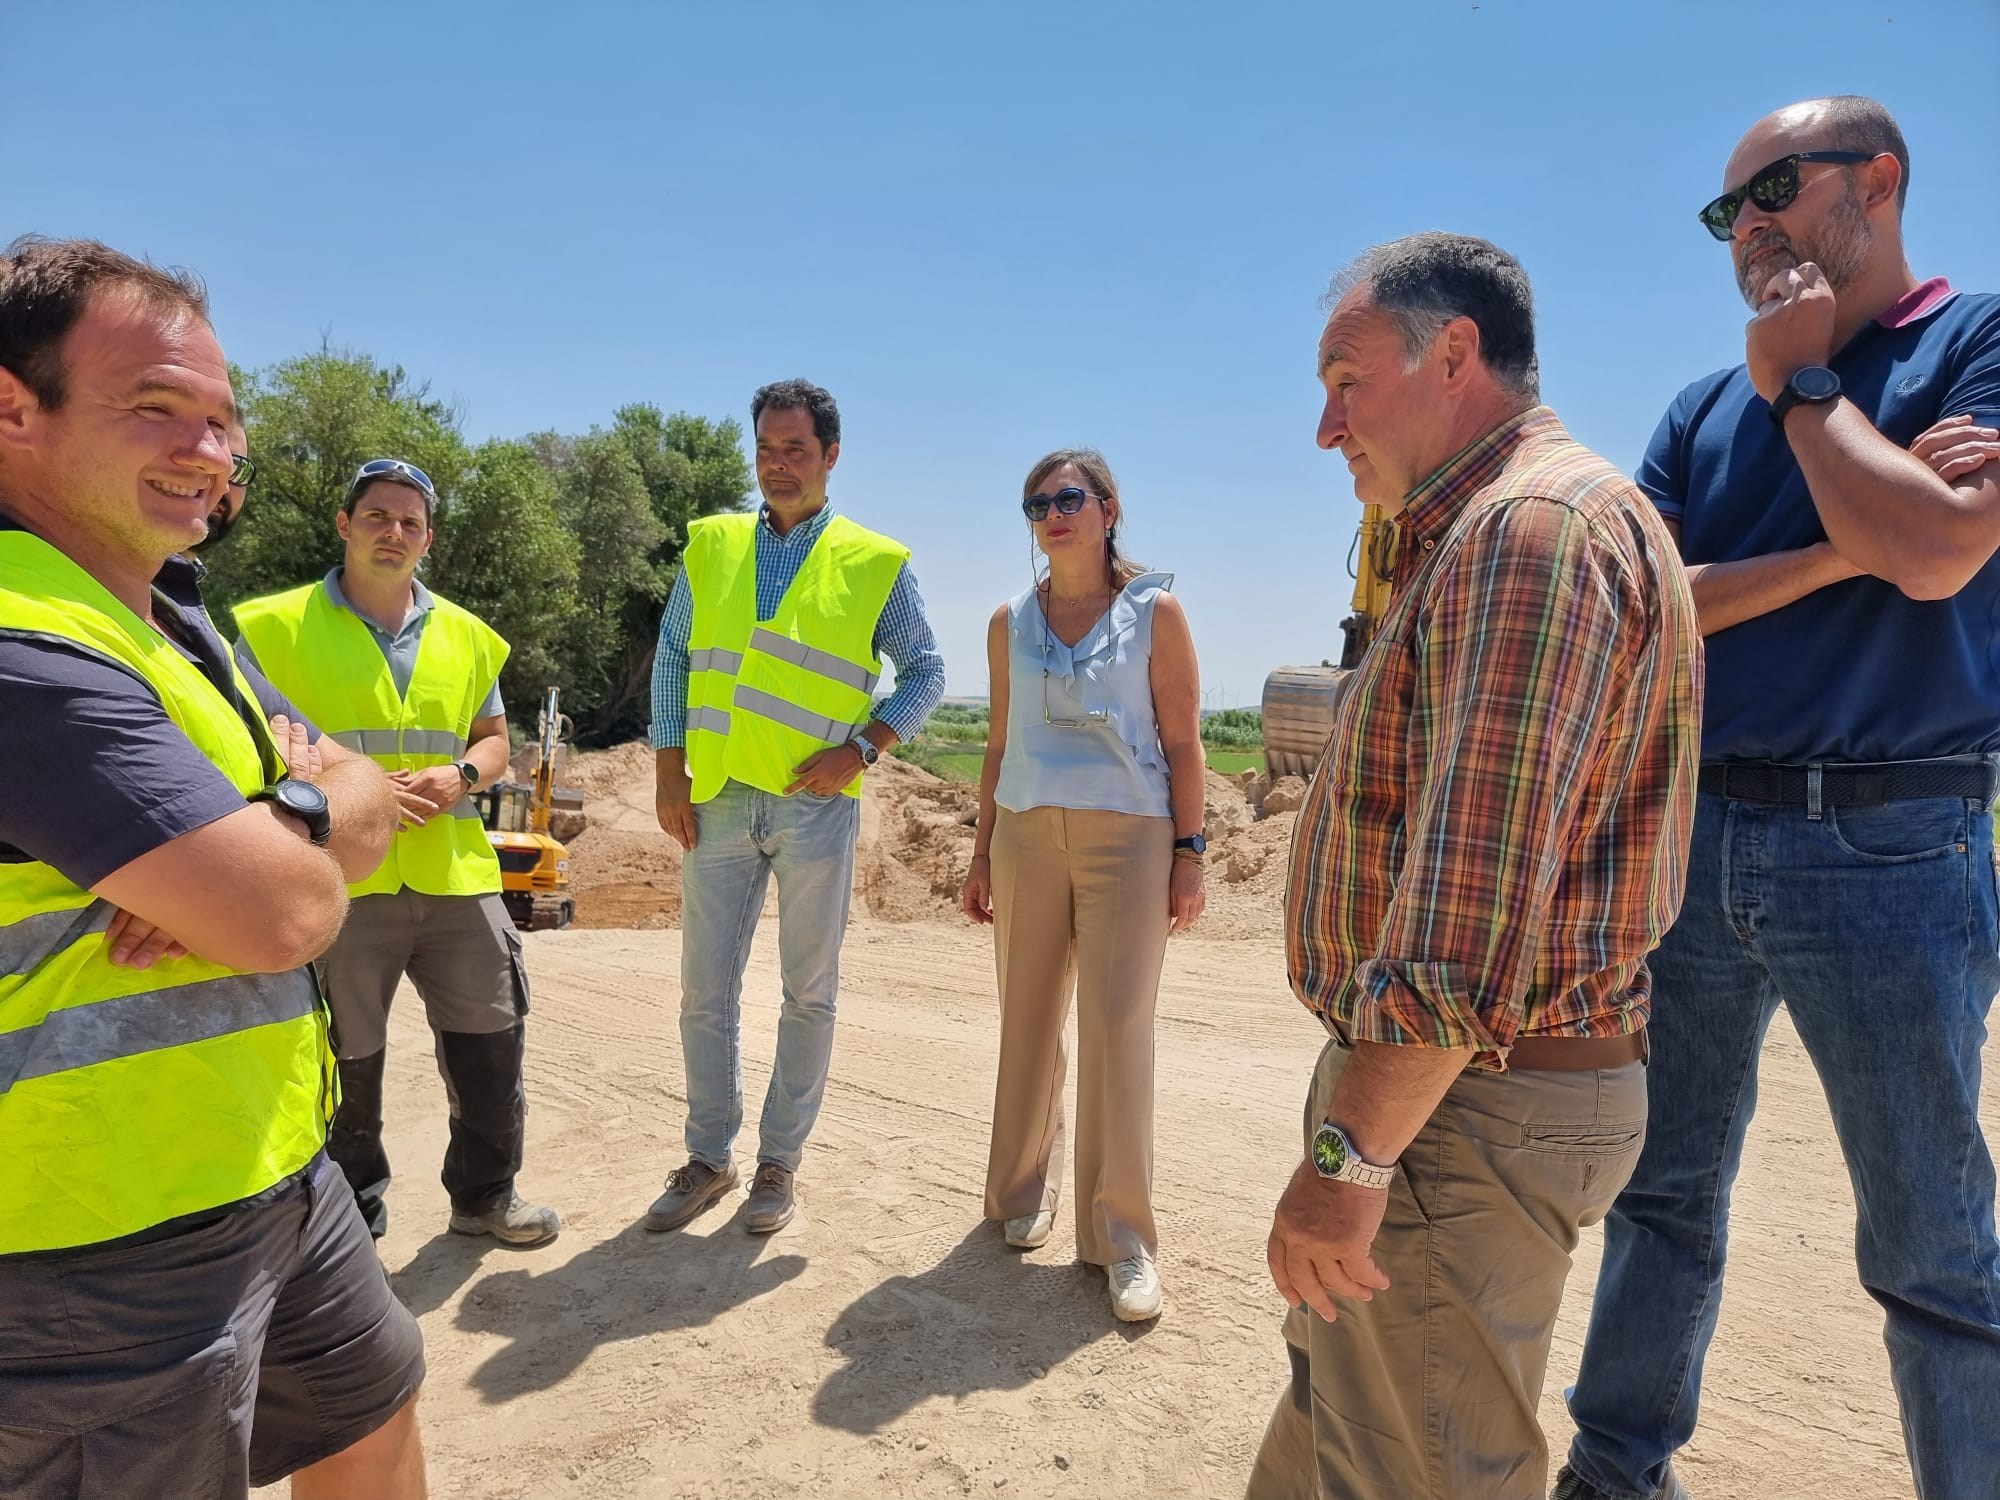 La presidenta de la CHE visita los trabajos de la Fase 2 de reparación de daños en cauce, con un presupuesto de 16,7 millones de euros para el tramo medio del Ebro y otras cuencas afectadas - Imagen 1